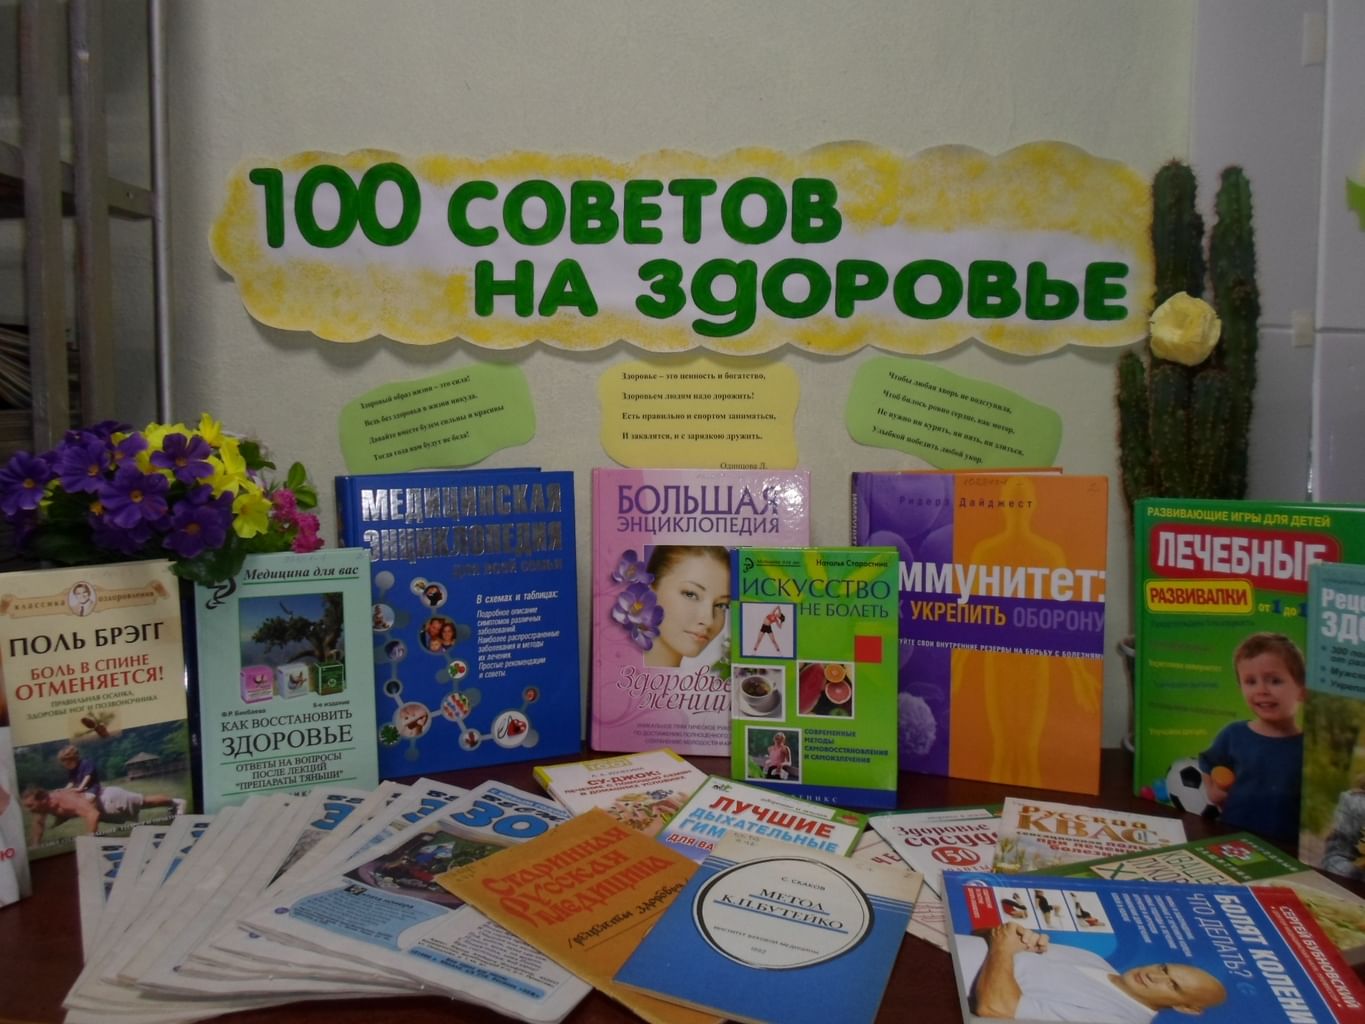 100 Советов на здоровье книжная выставка в библиотеке